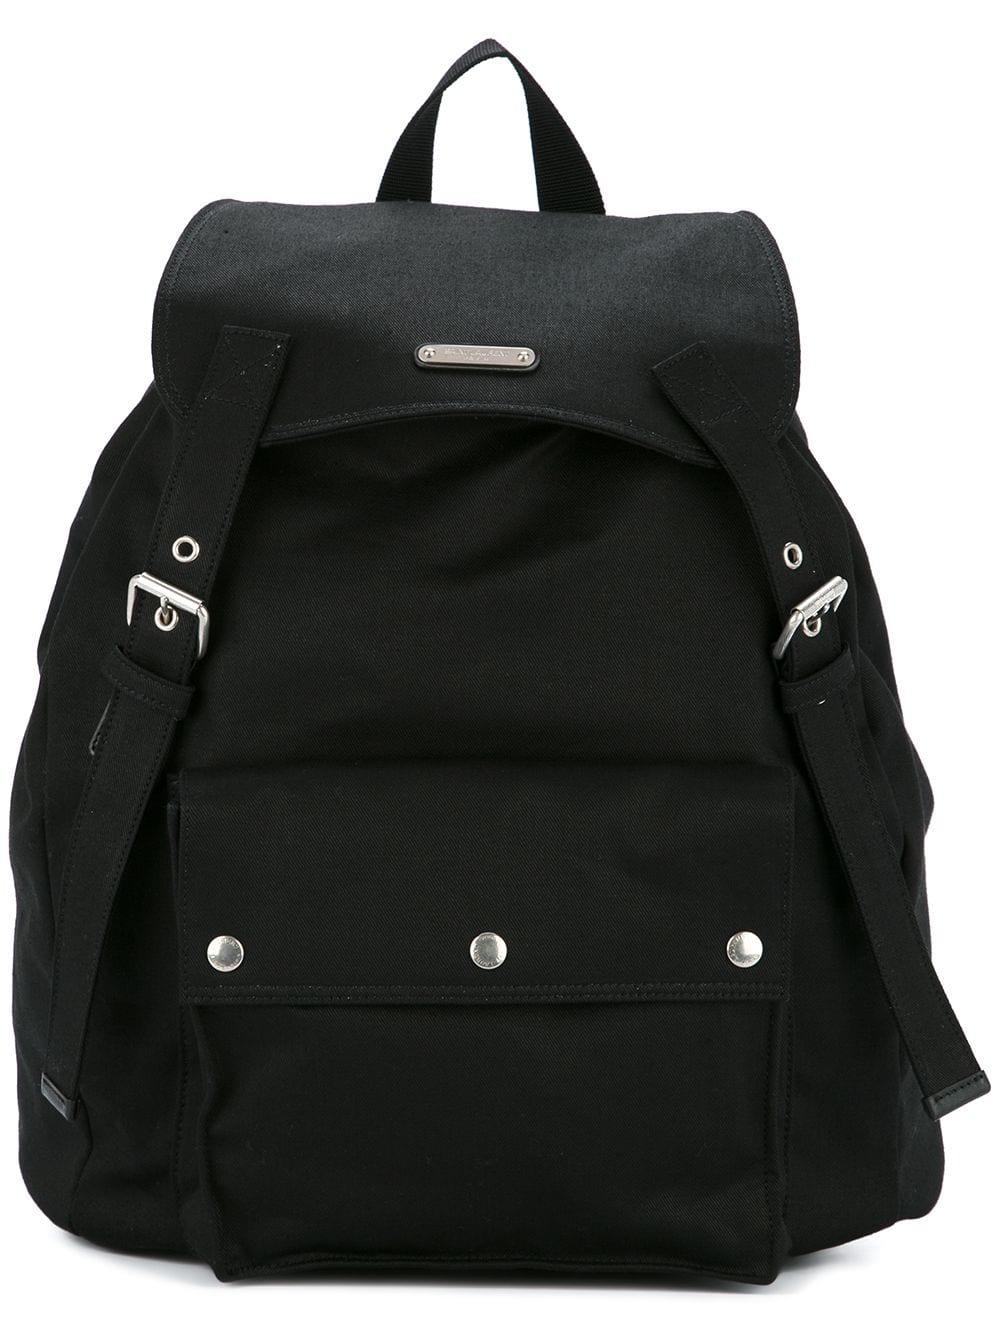 Saint Laurent Cotton Noe Backpack in Black for Men - Lyst